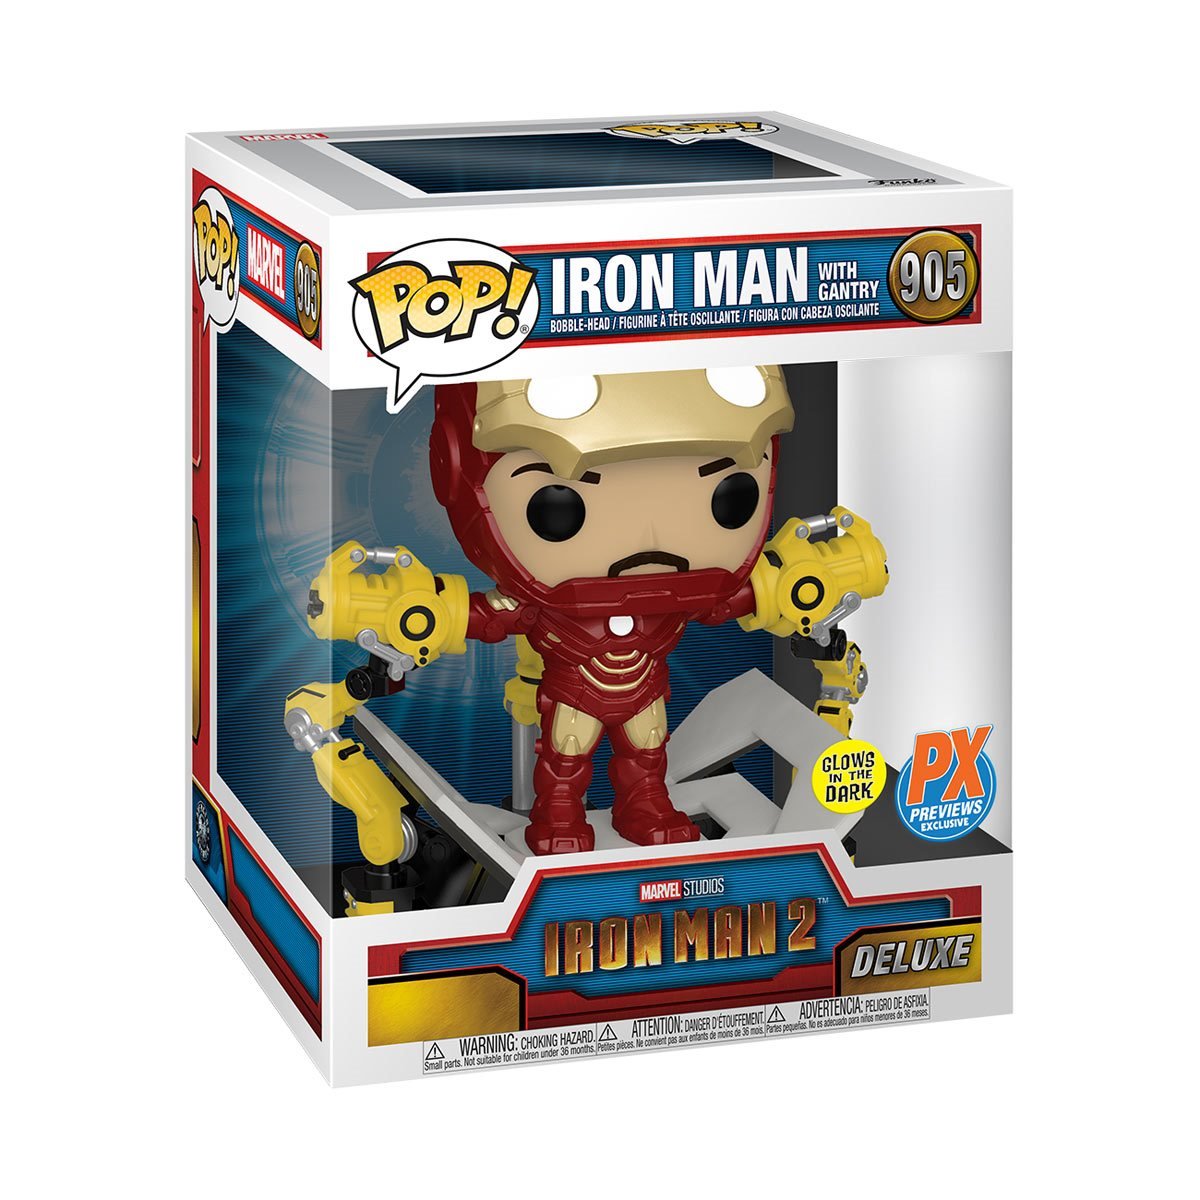 Funko Pop! Marvel Iron Man 2 Iron Man with Gantry (Glow) PX 